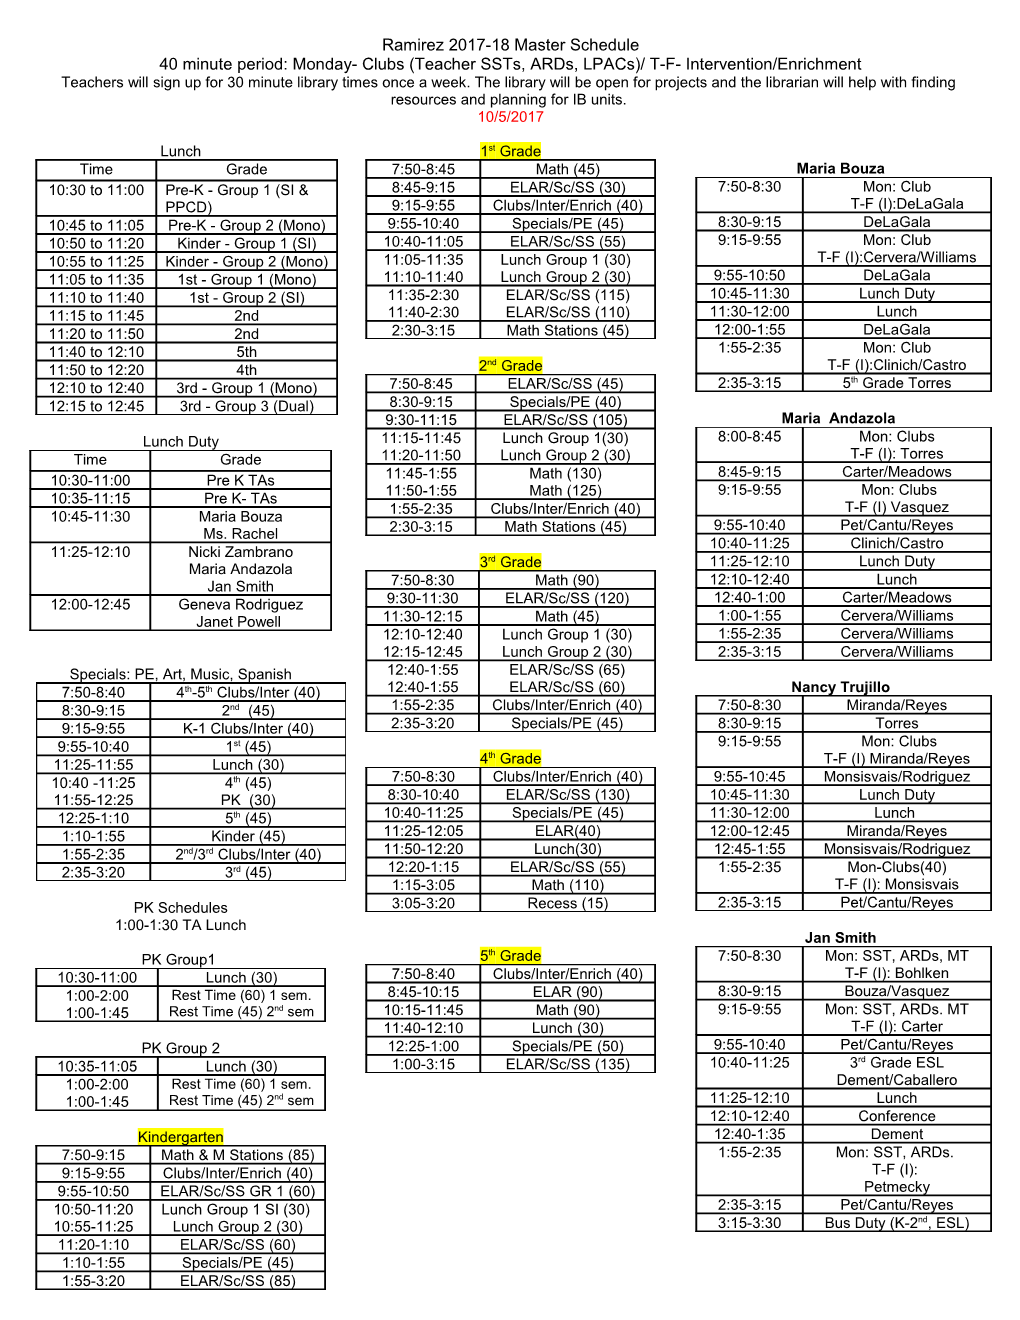 Bozeman 2009-2010 Master Schedule